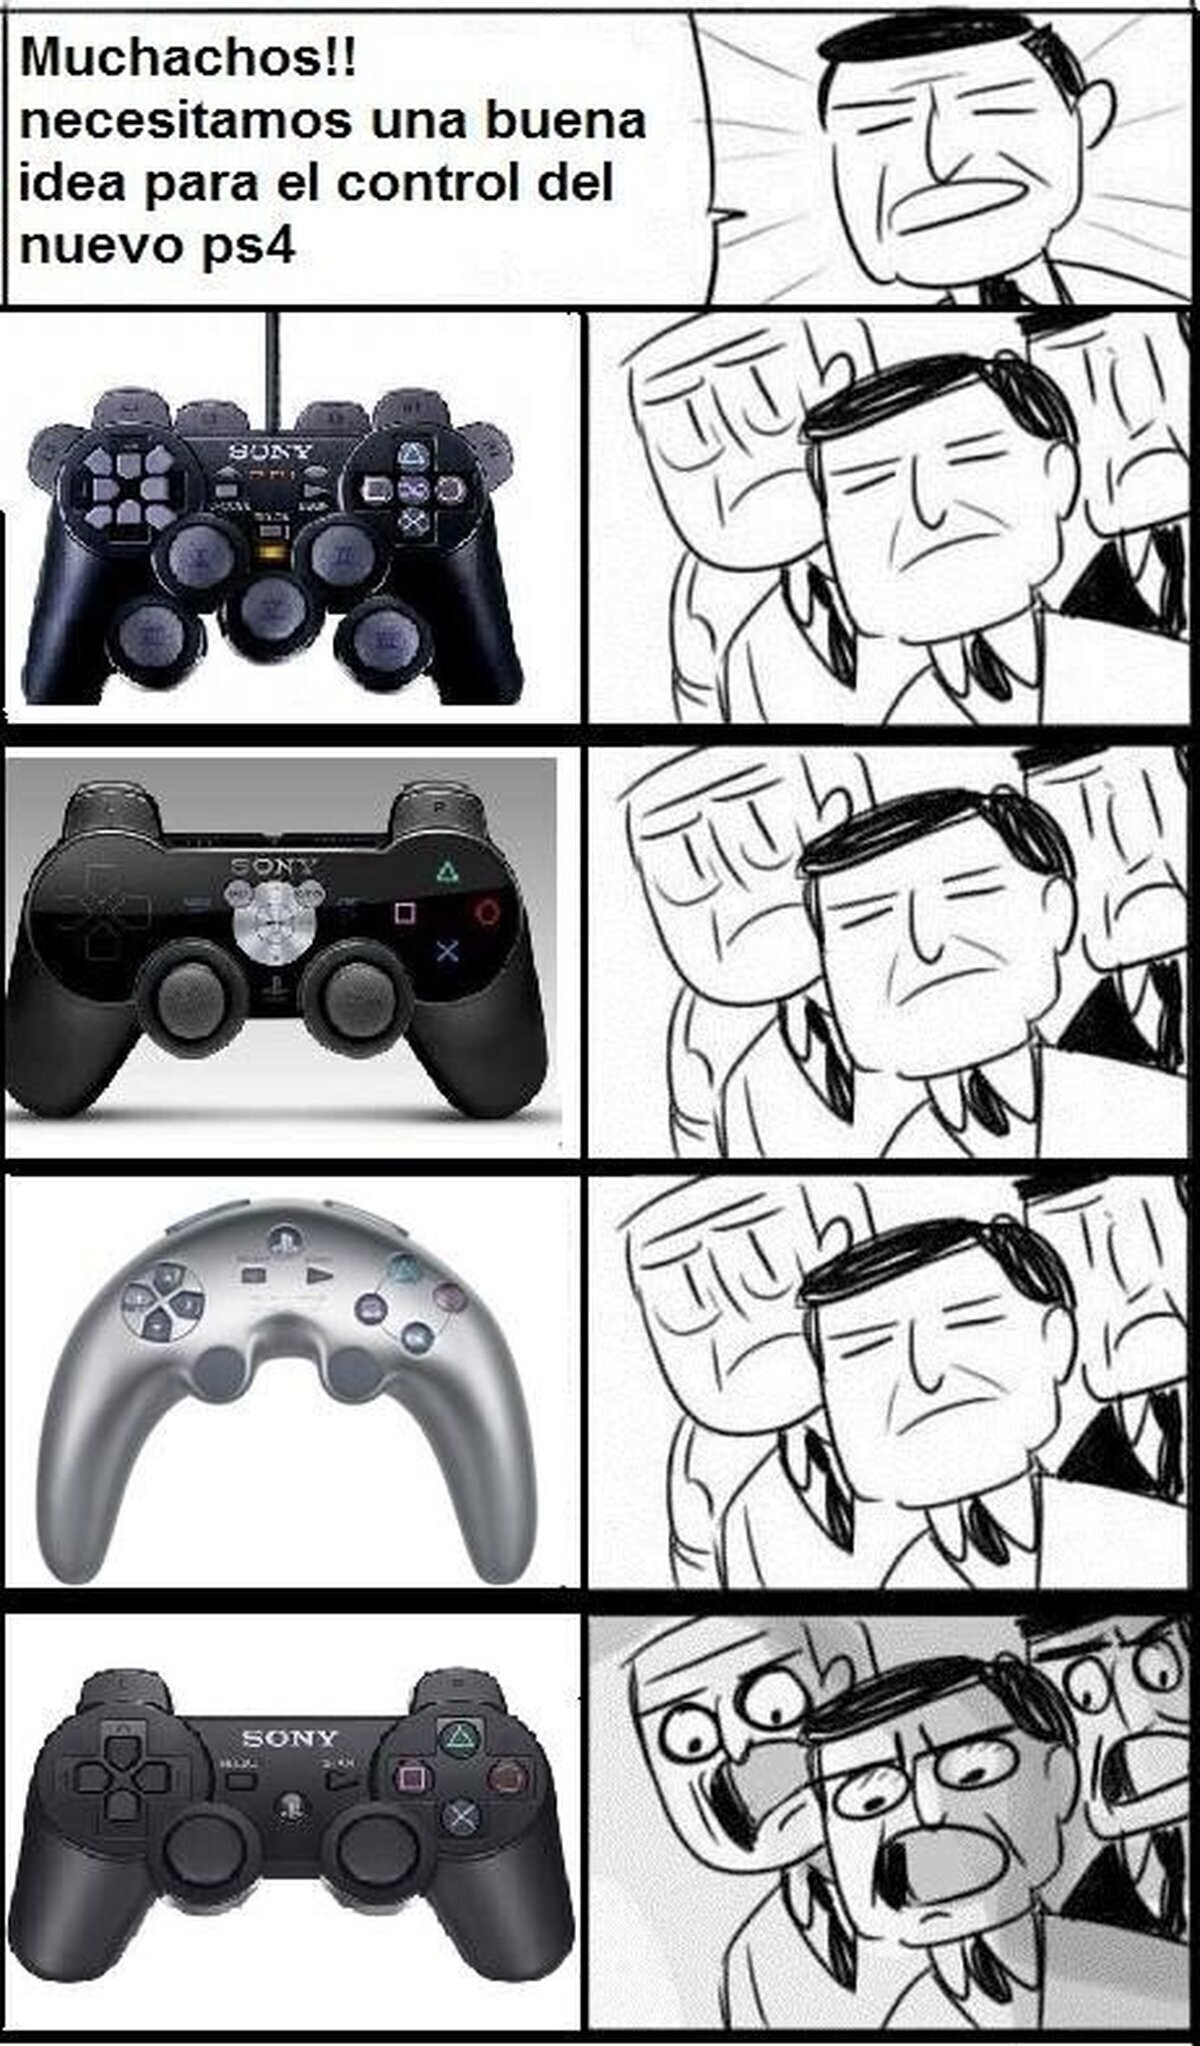 Playstation, siempre los mismos mandos